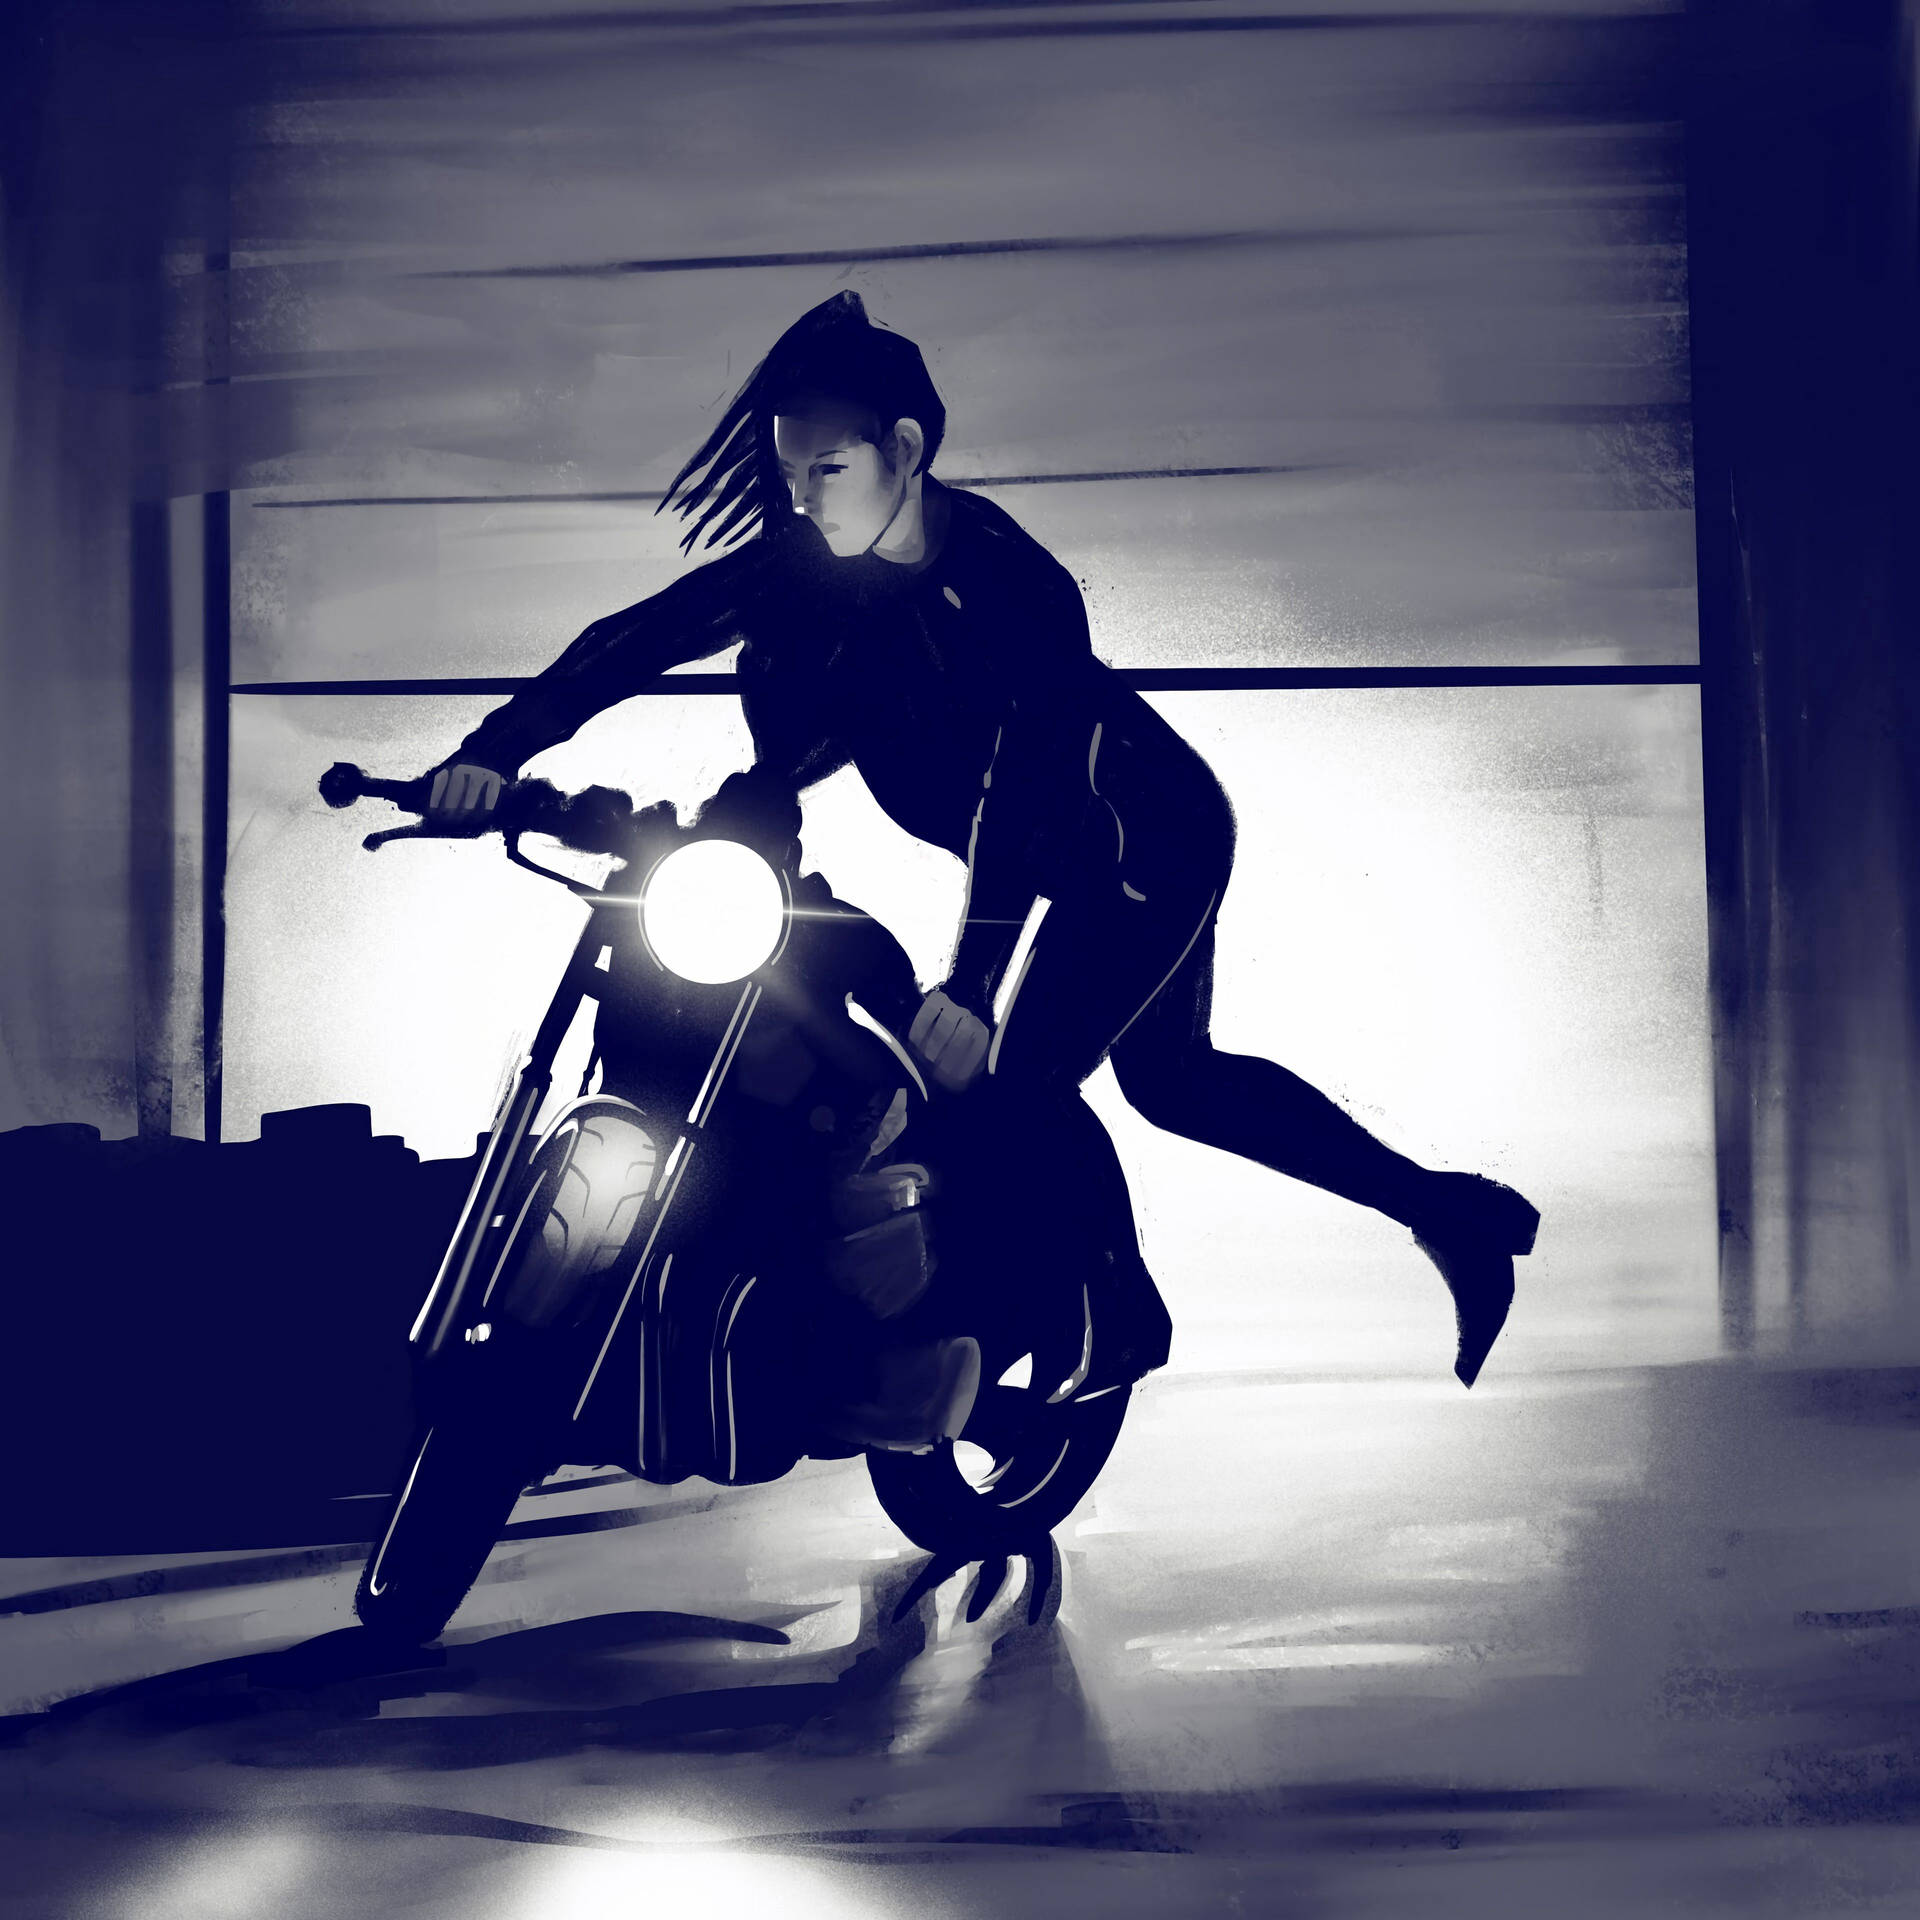  Motorrad Girl Hintergrundbild 1920x1920. Motorcycle Wallpaper